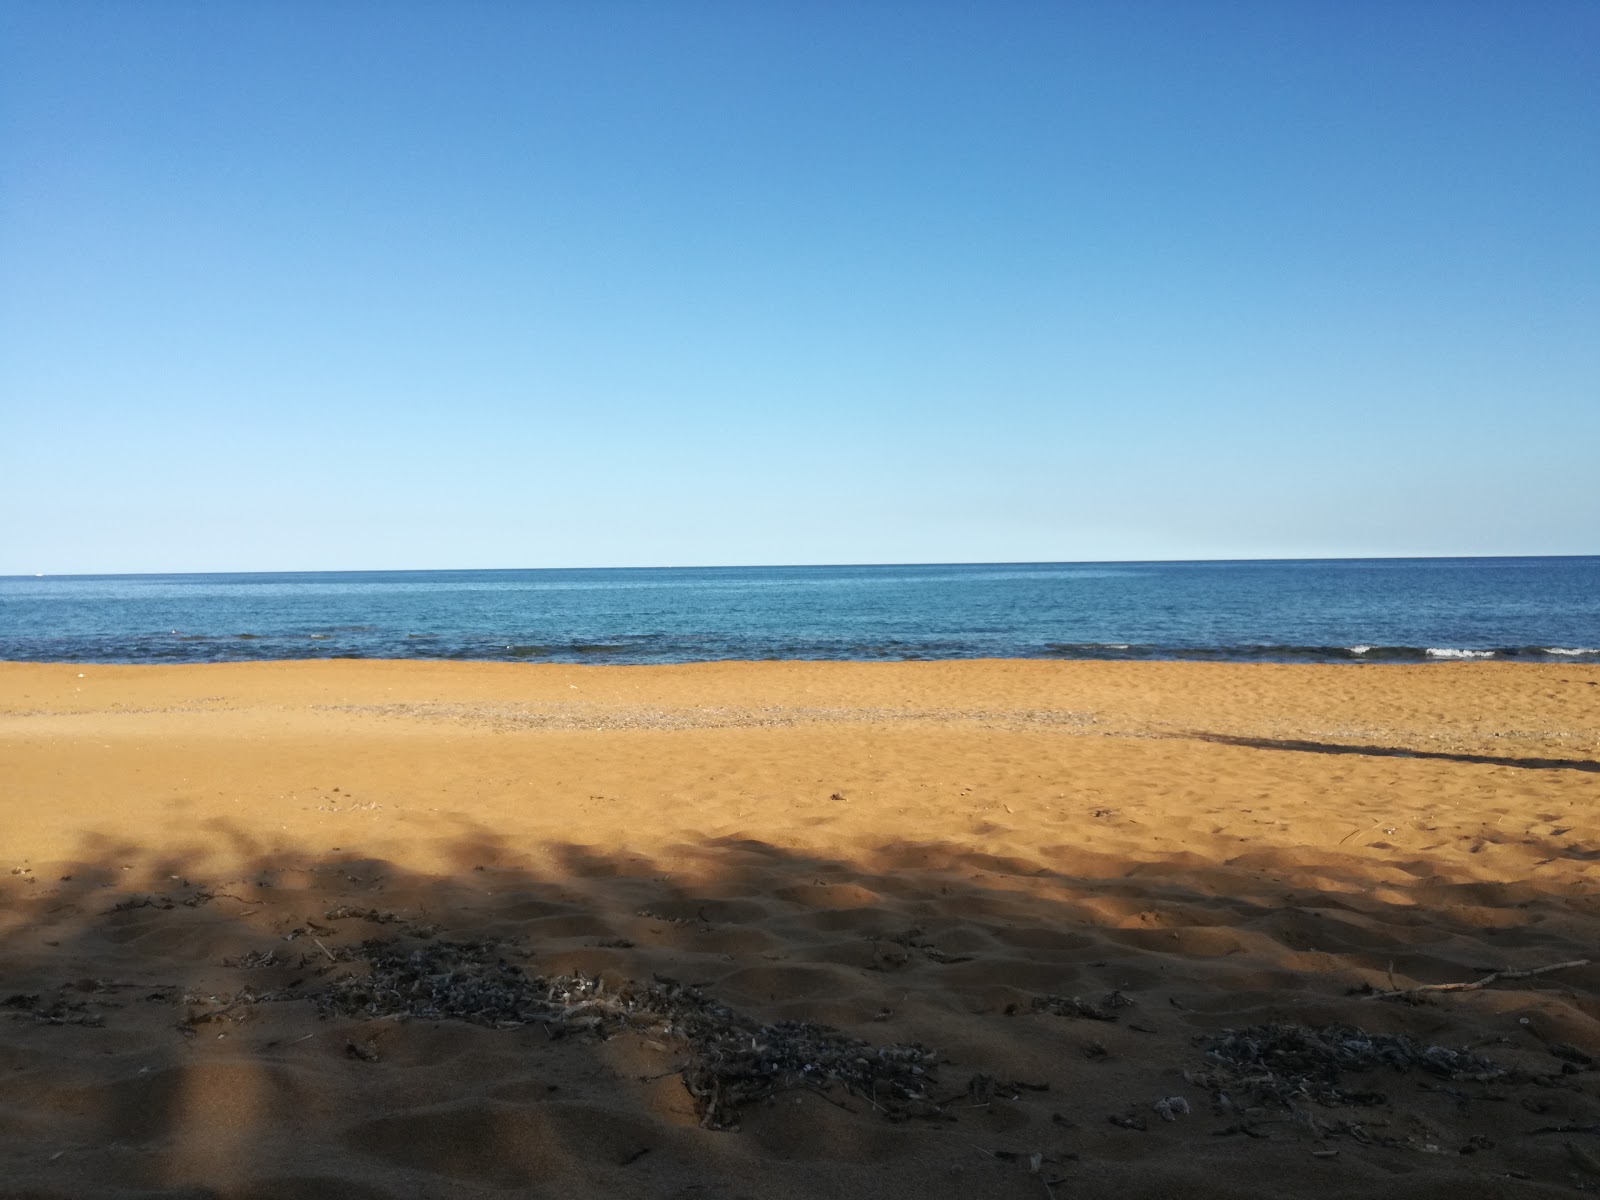 Foto von Spiaggia di Marinella mit blaues wasser Oberfläche